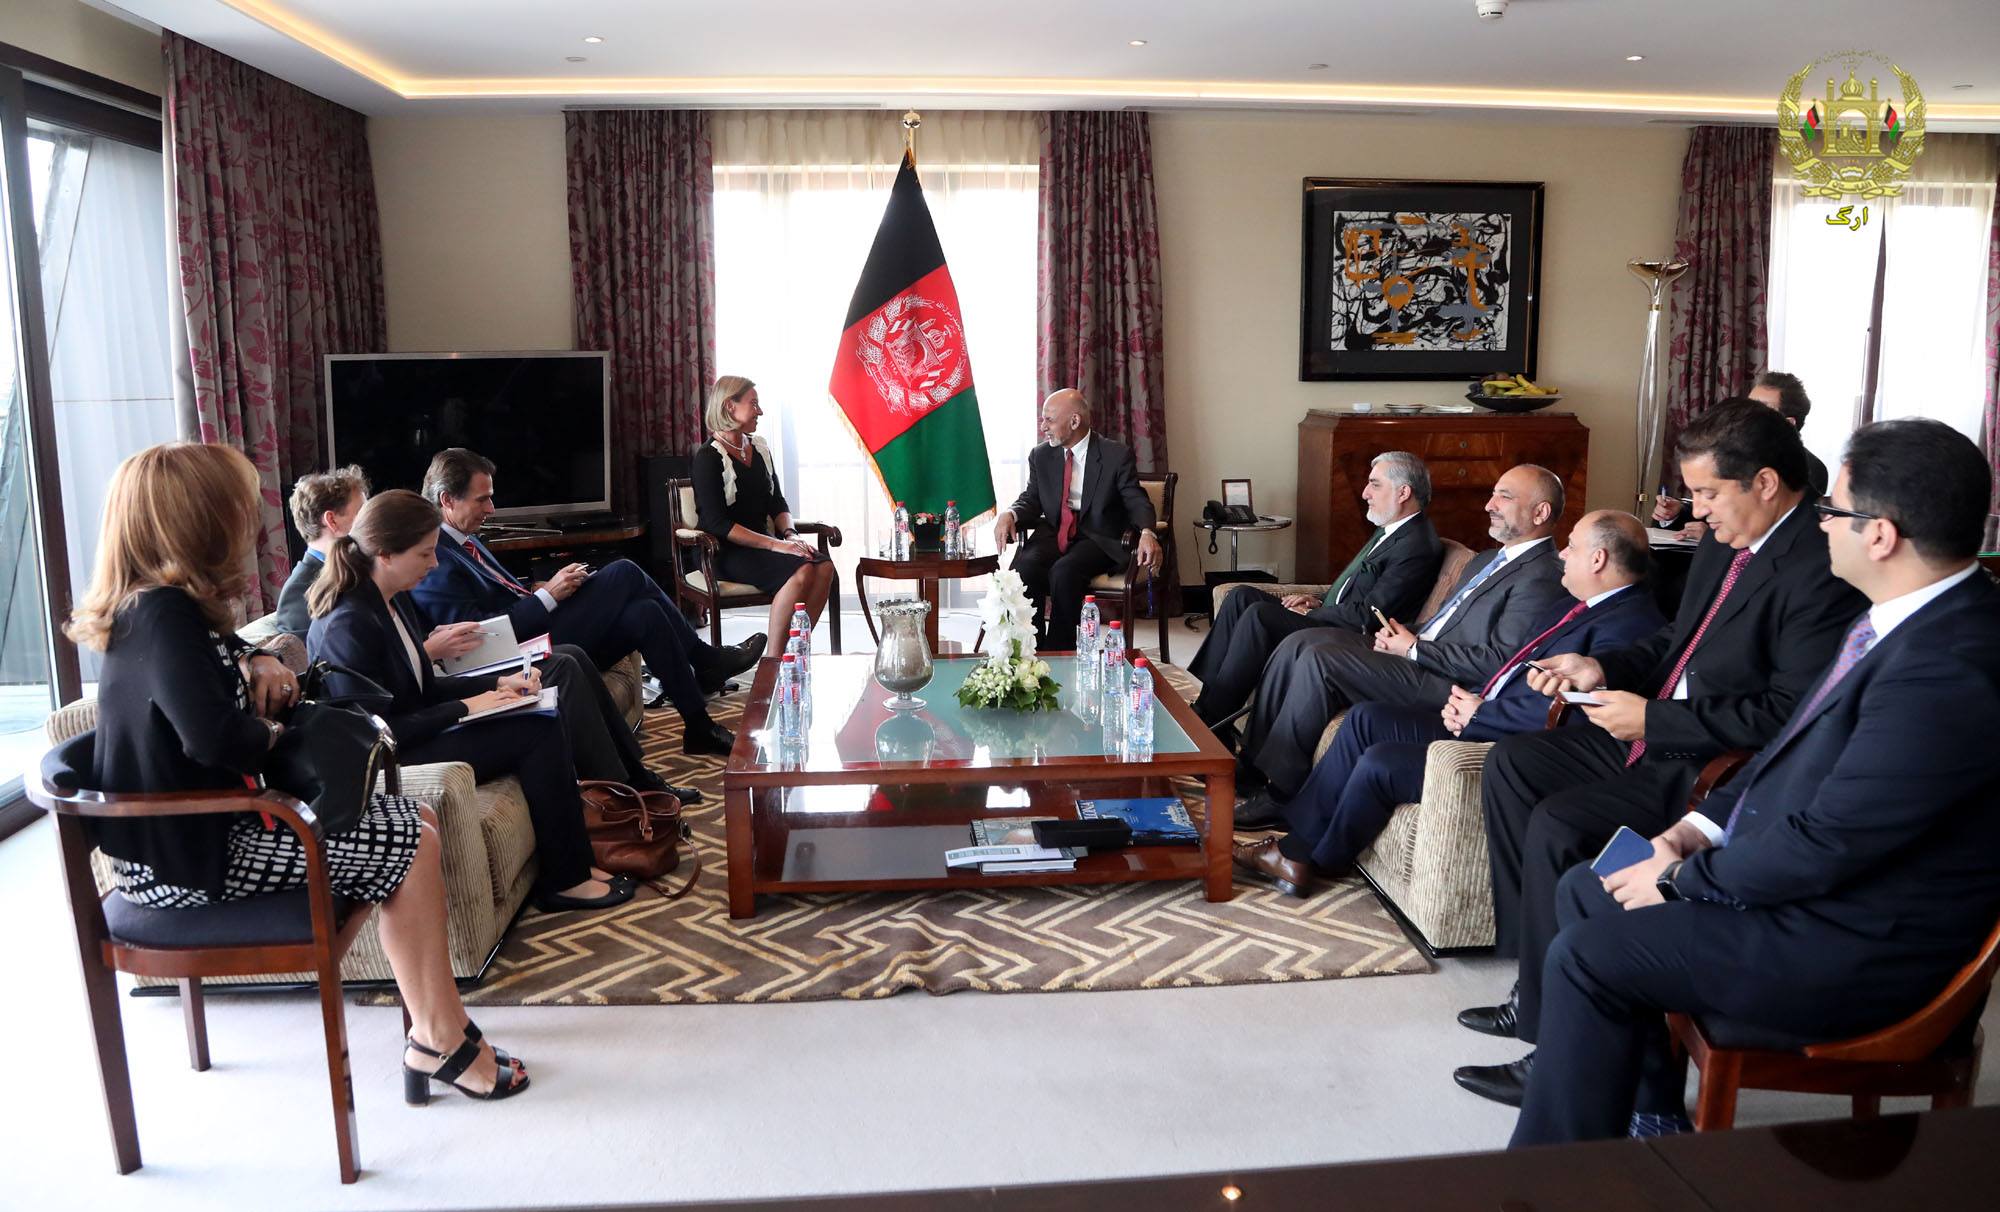  غنی: حضور ناظران بین المللی در برگزاری انتخابات افغانستان ضروری است